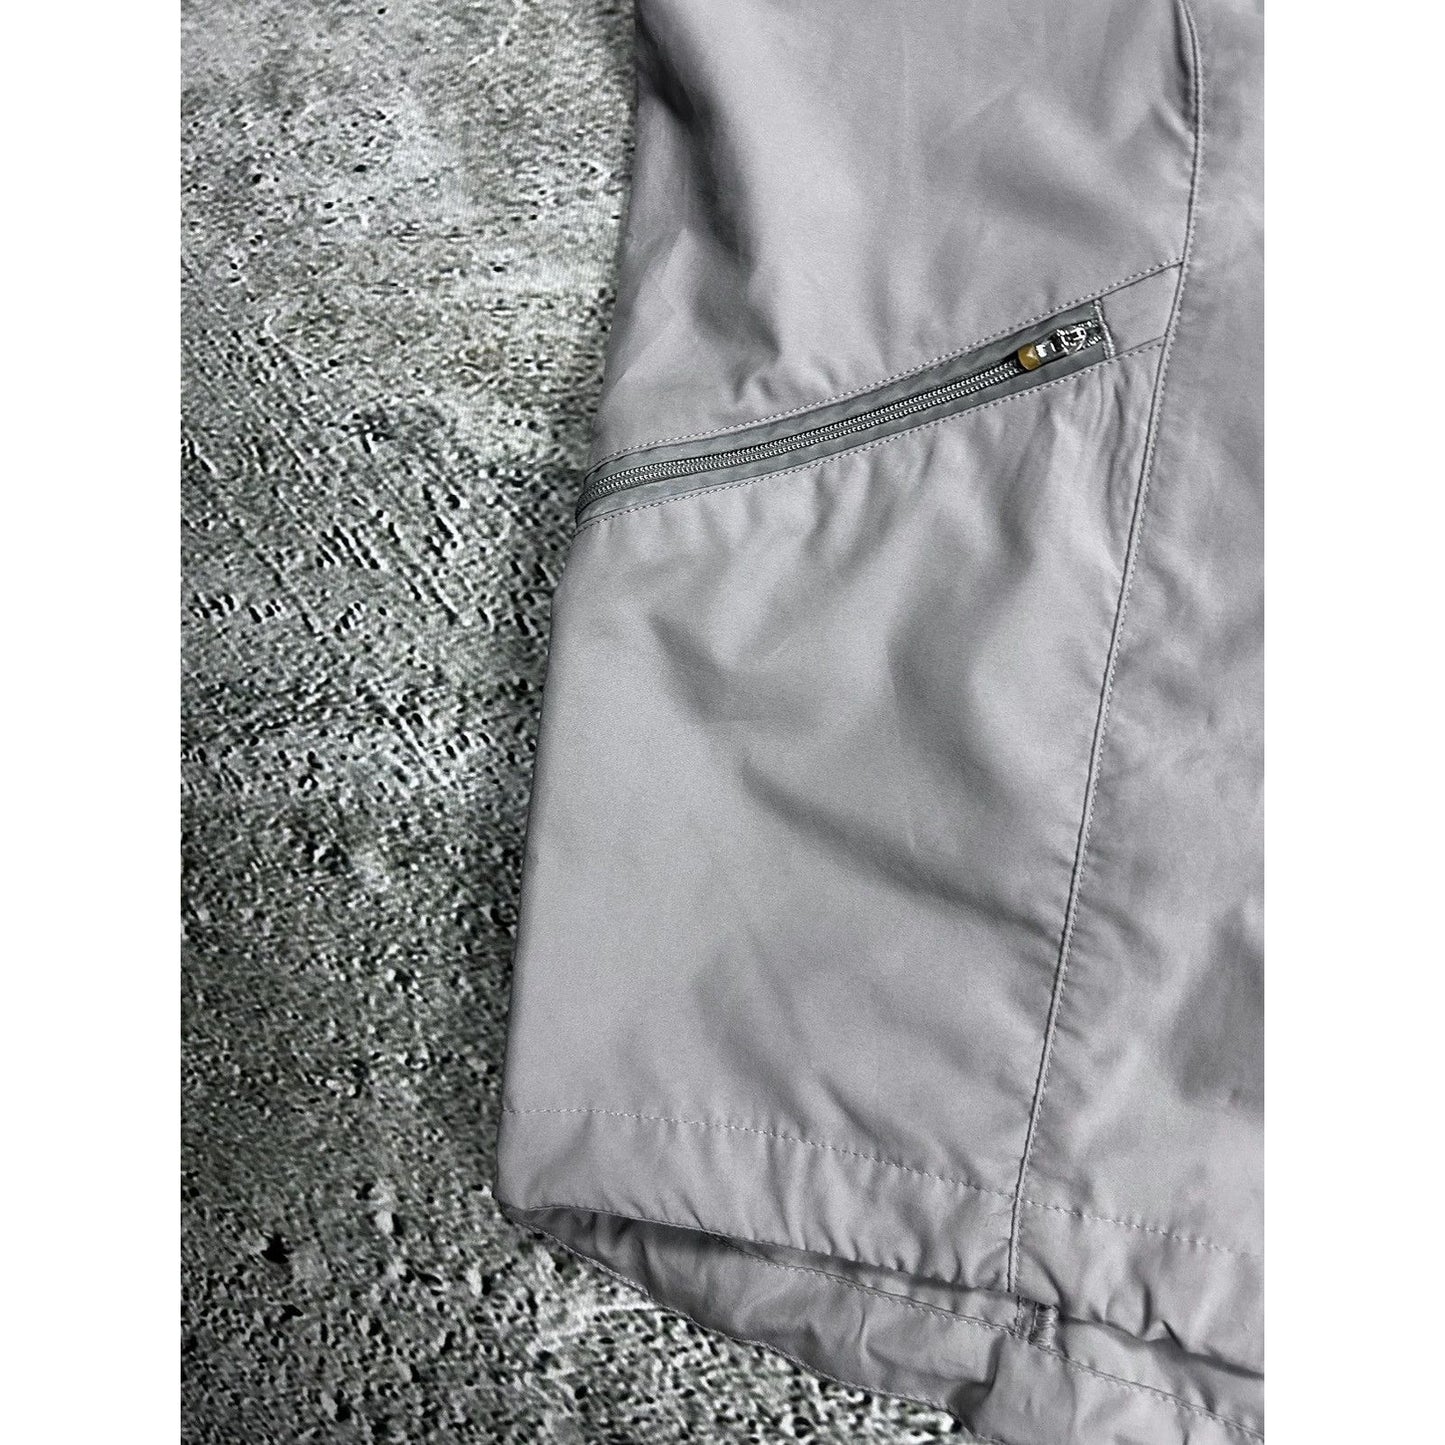 Nike vest grey vintage drill Y2K track jacket reflective